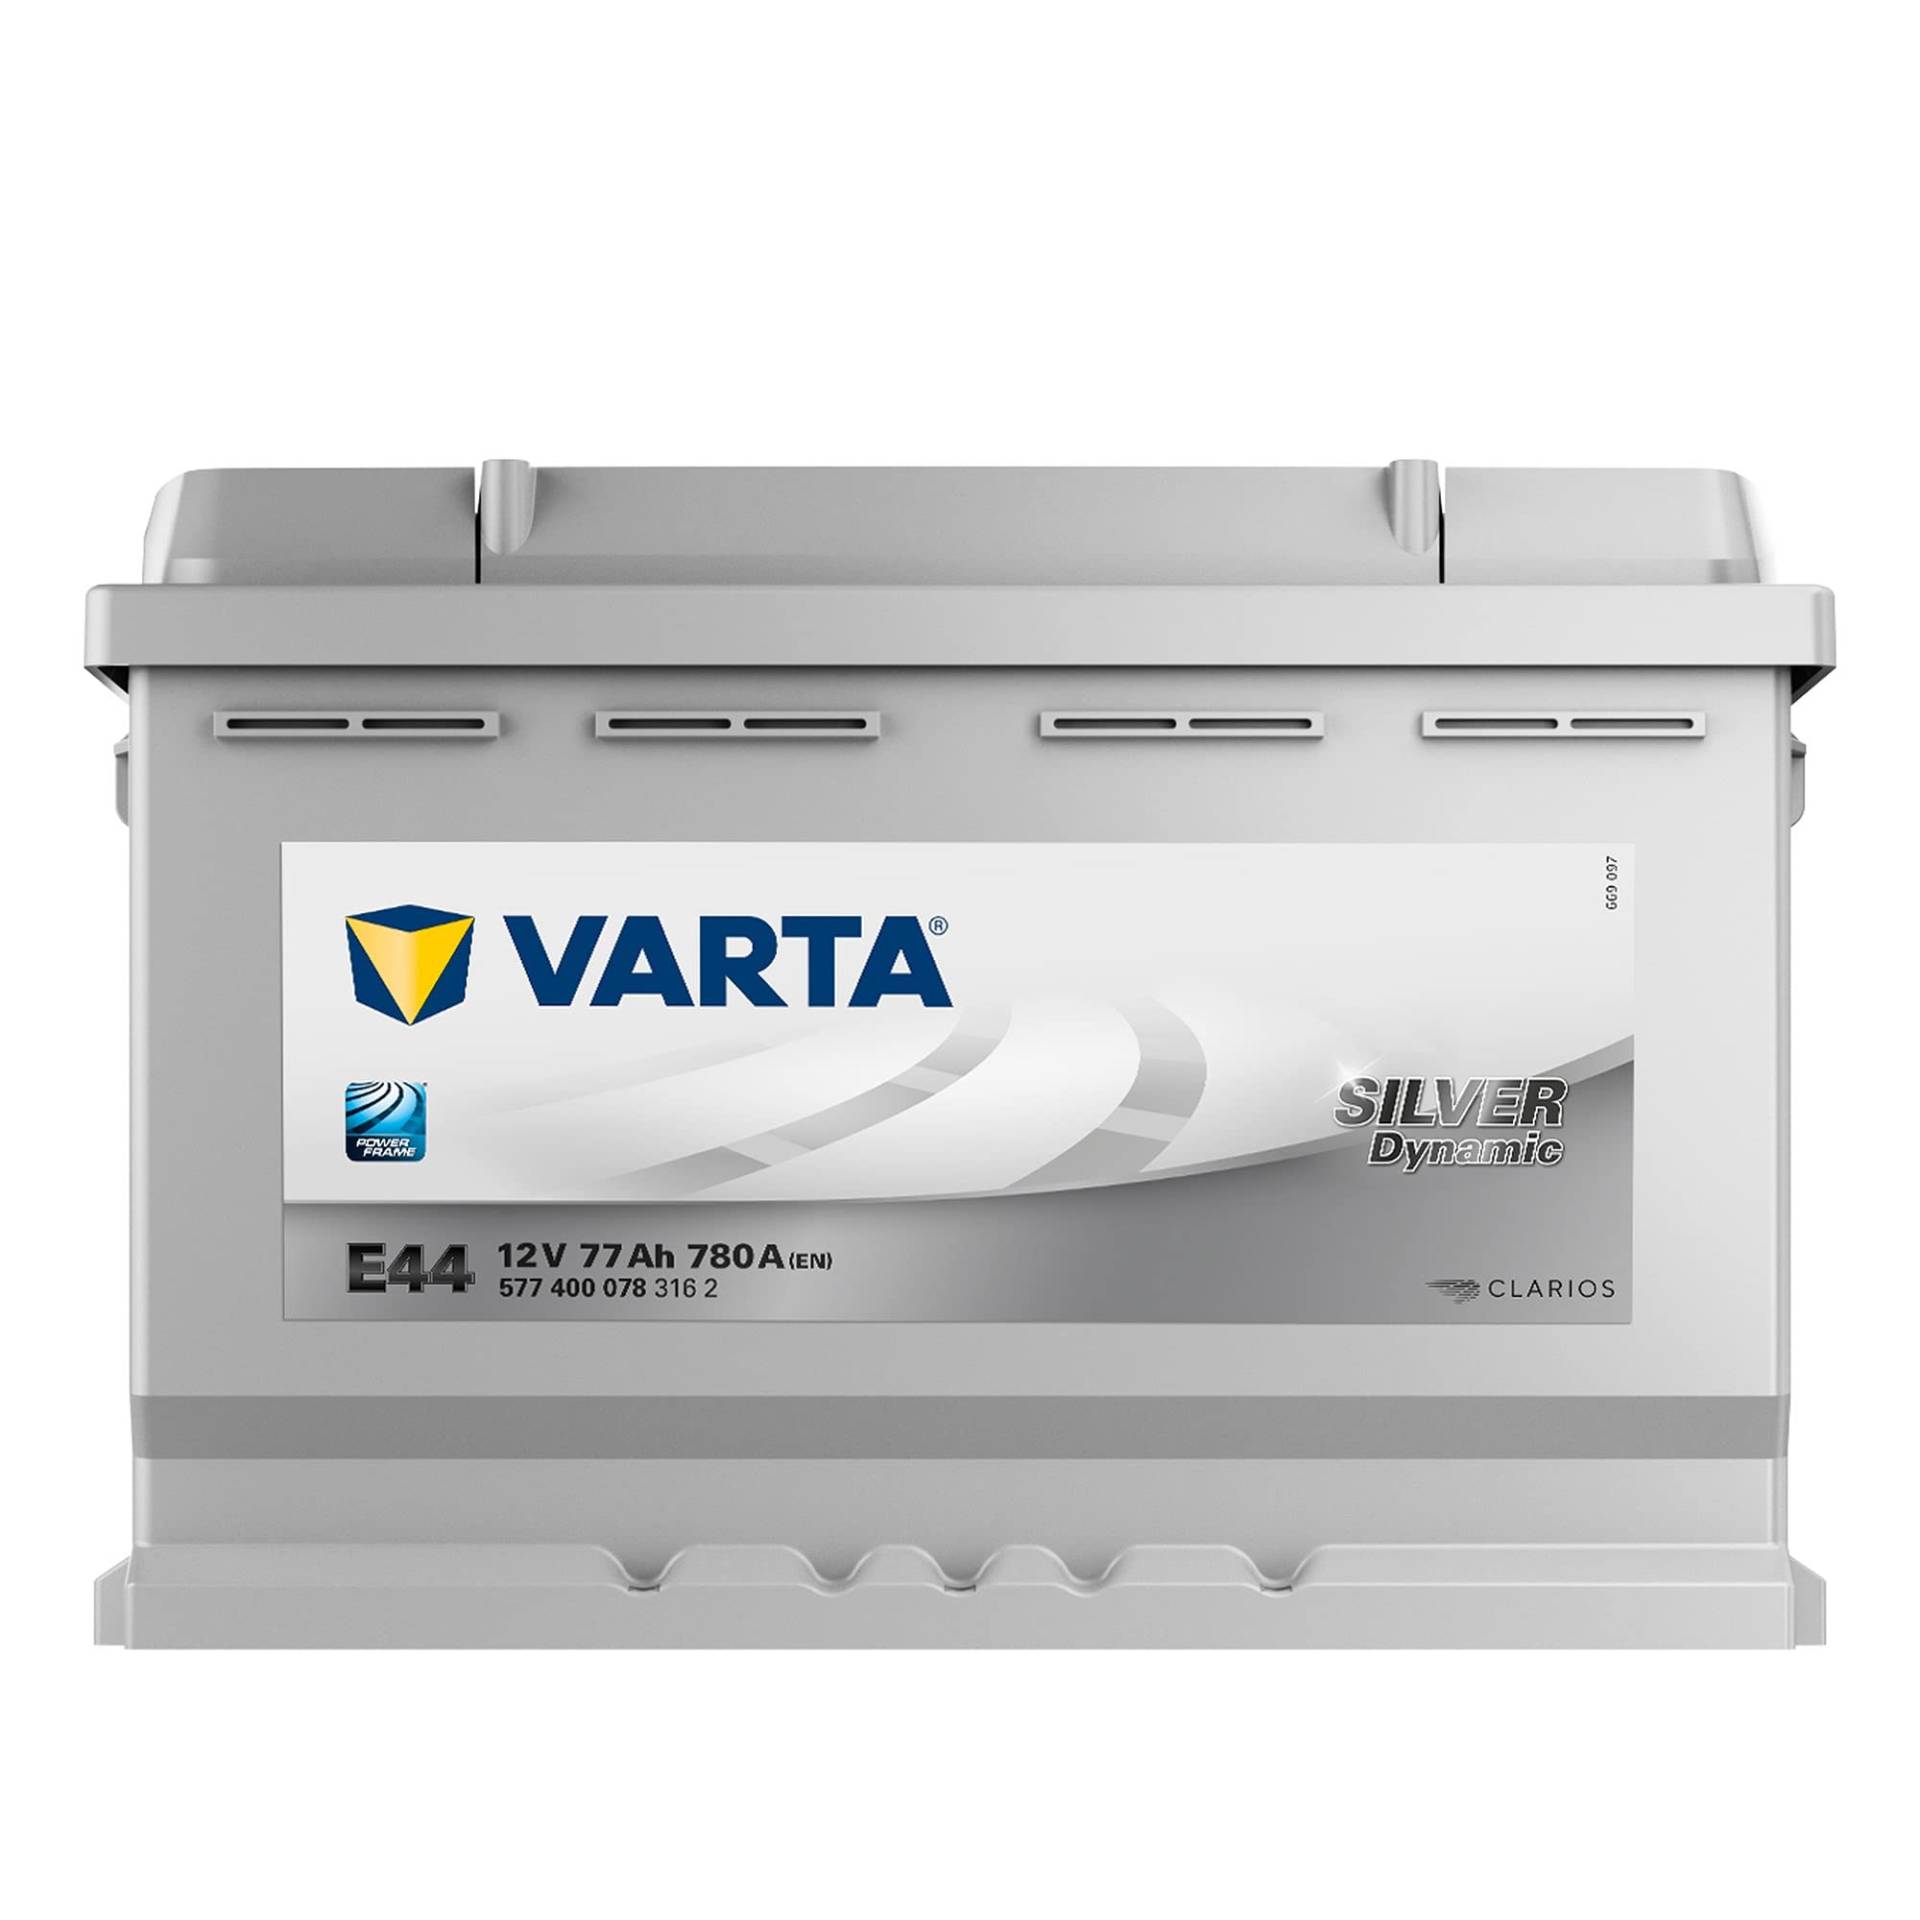 VARTA E44 Silver Dynamic Starterbatterie 5774000783162 12V 77Ah, passenger car von Varta